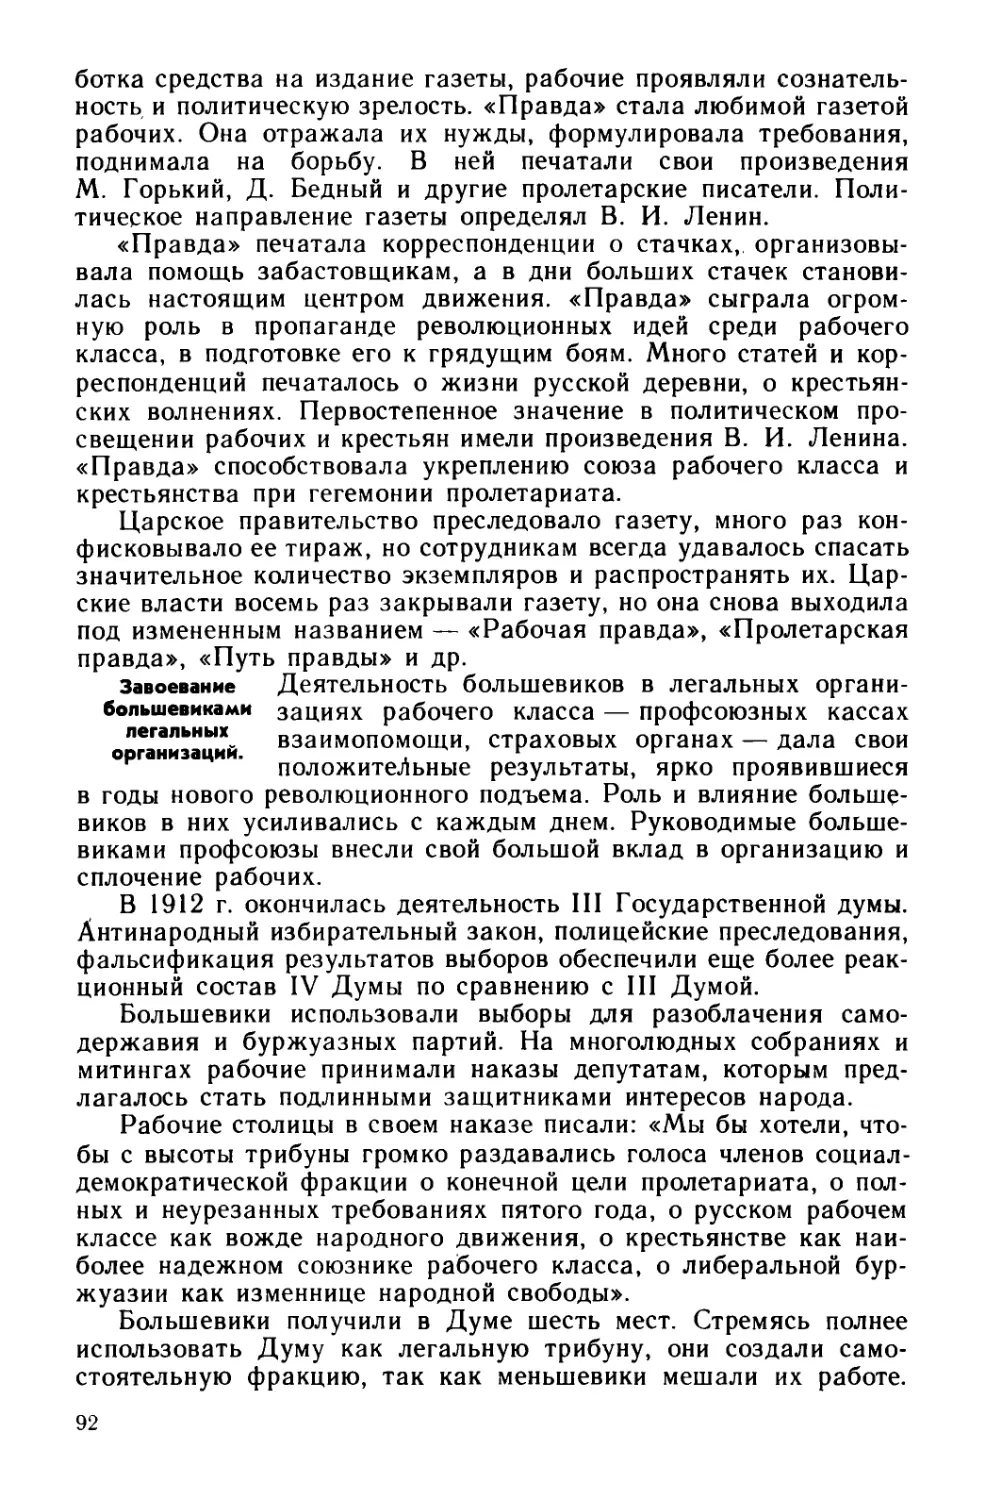 § 20. Большевики в годы нового революционного подъема